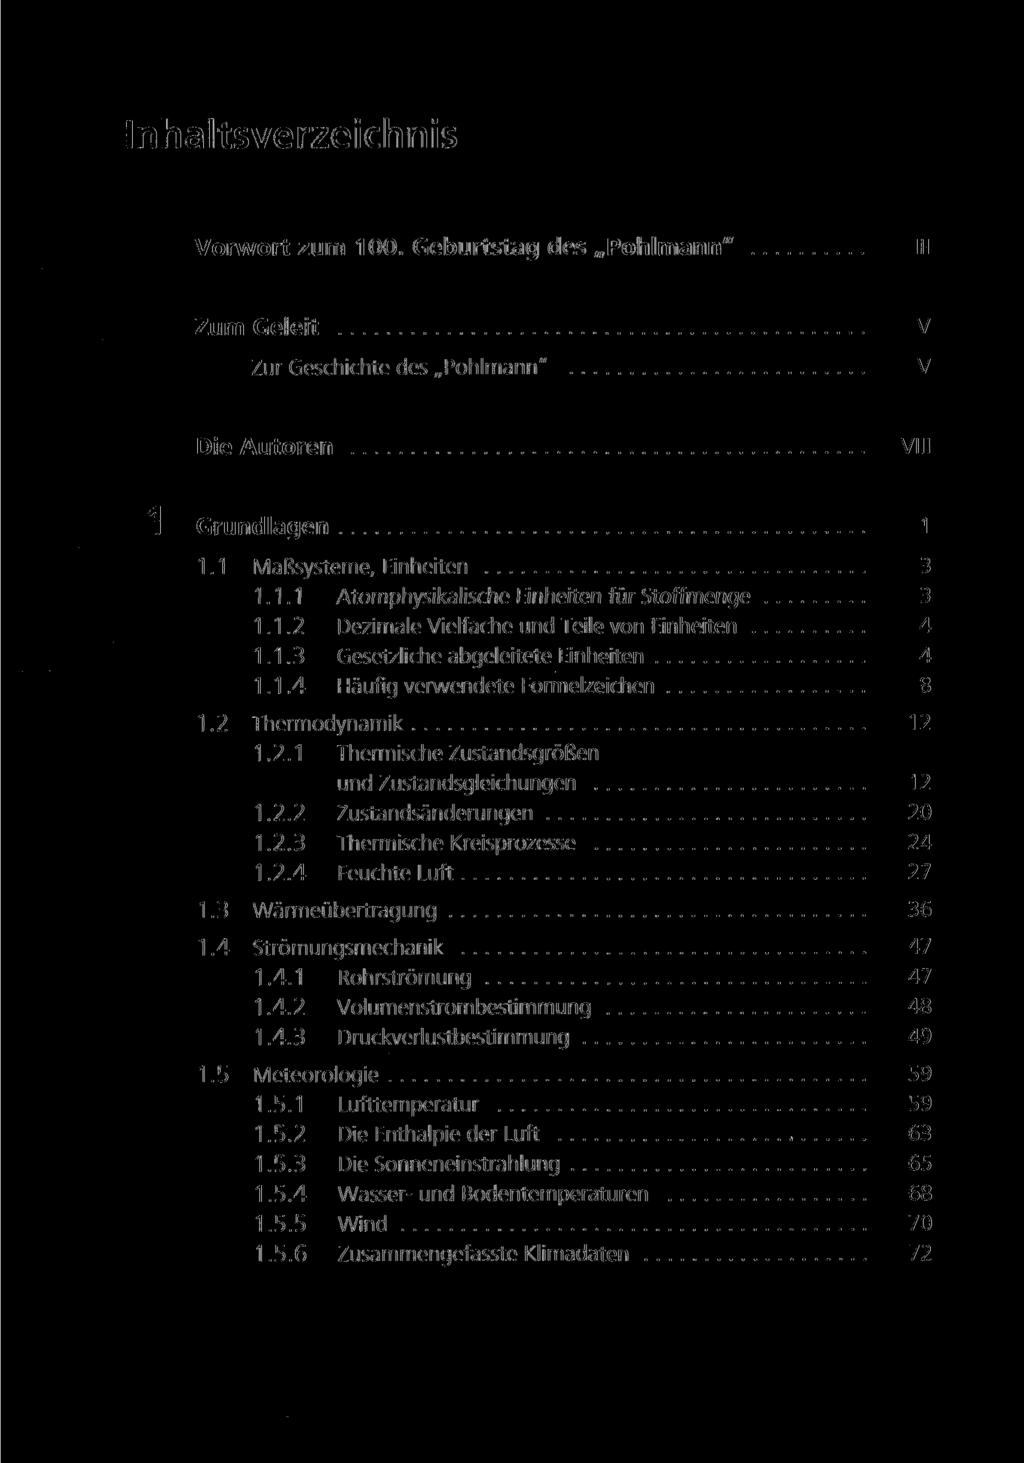 Inhaltsverzeichnis Vorwort zum 100. Geburtstag des Pohlmann" Ill Zum Geleit v Zur Geschichte des Pohlmann" V Die Autoren VIII 1 Grundlagen 1 1.1 Malssysteme, Einheiten 3 1.1.1 Atomphysikalische Einheiten für Stoffmenge 3 1.